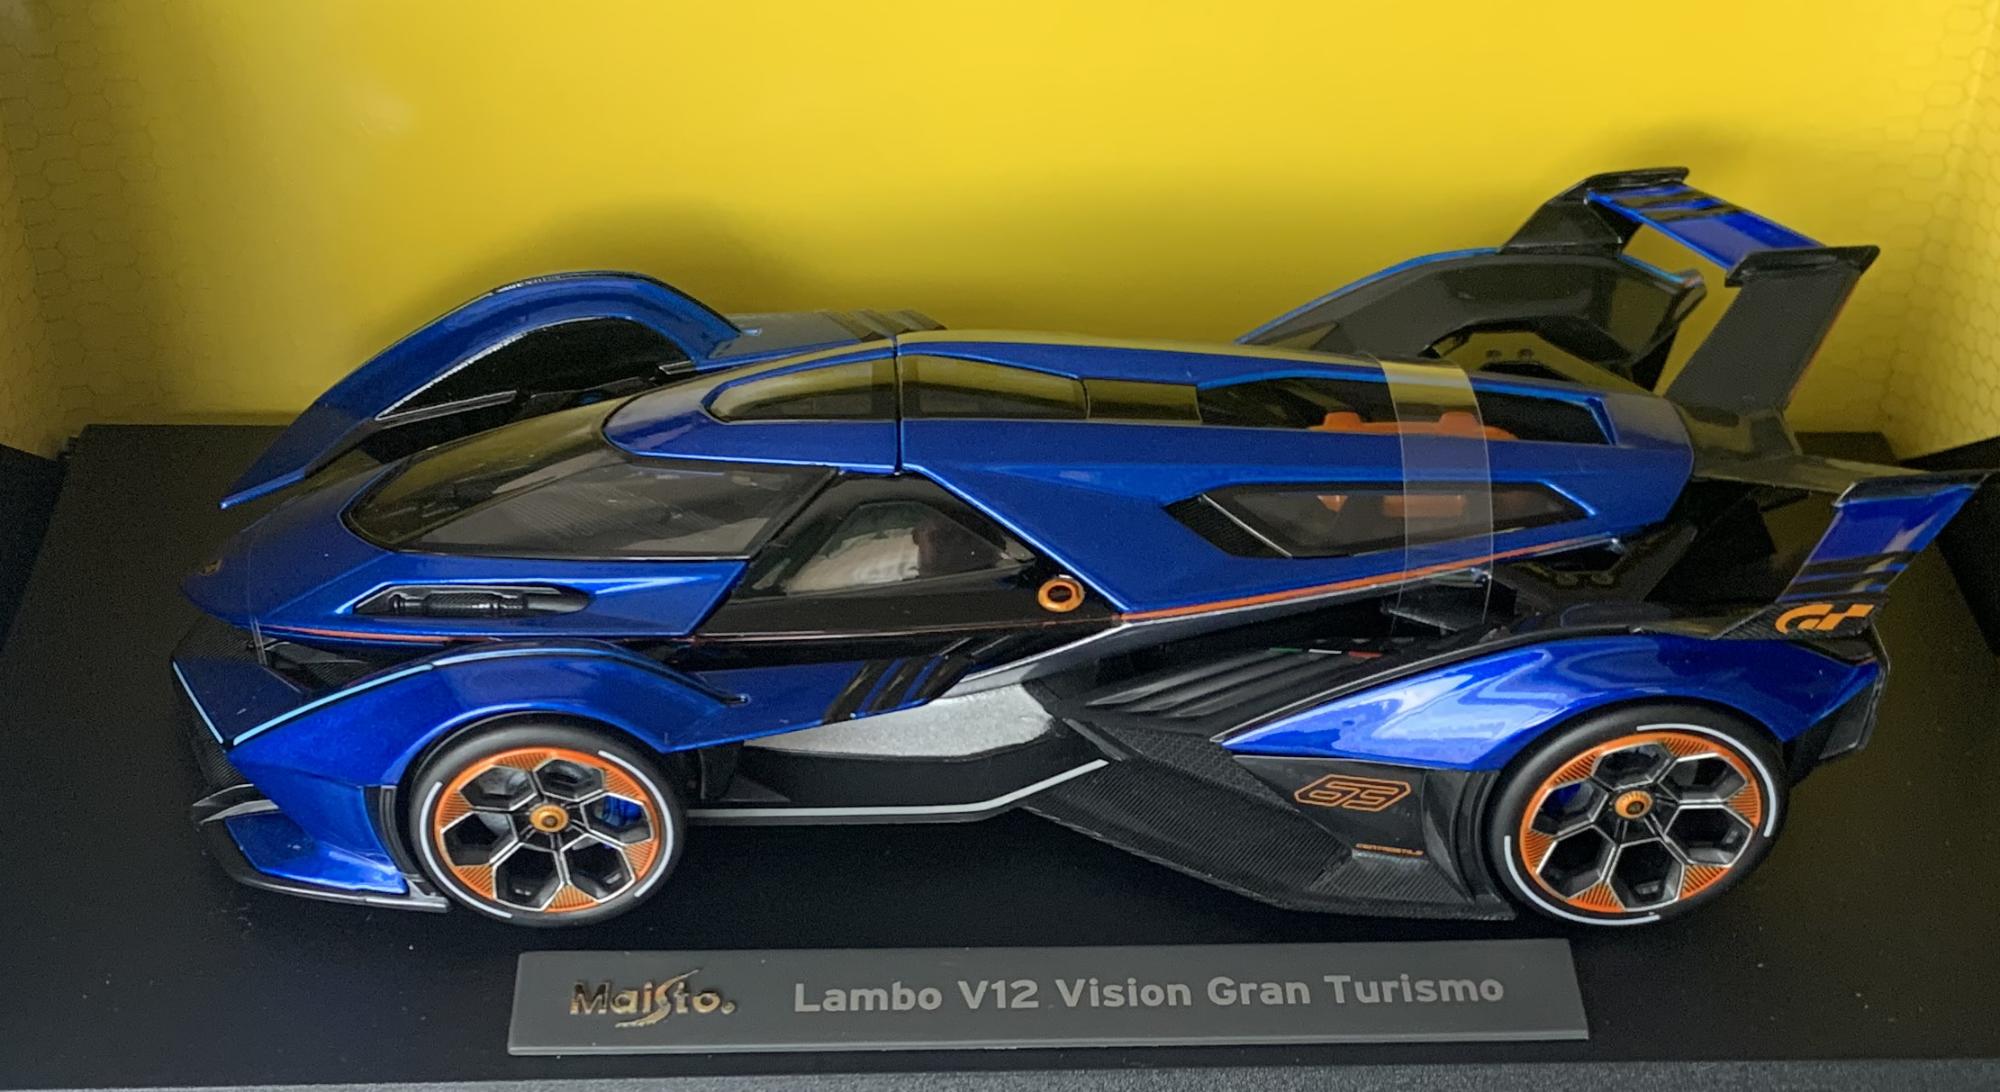 Lamborghini V12 Vision Gran Turismo 2021 in blue / black 1:18 scale model from Maisto